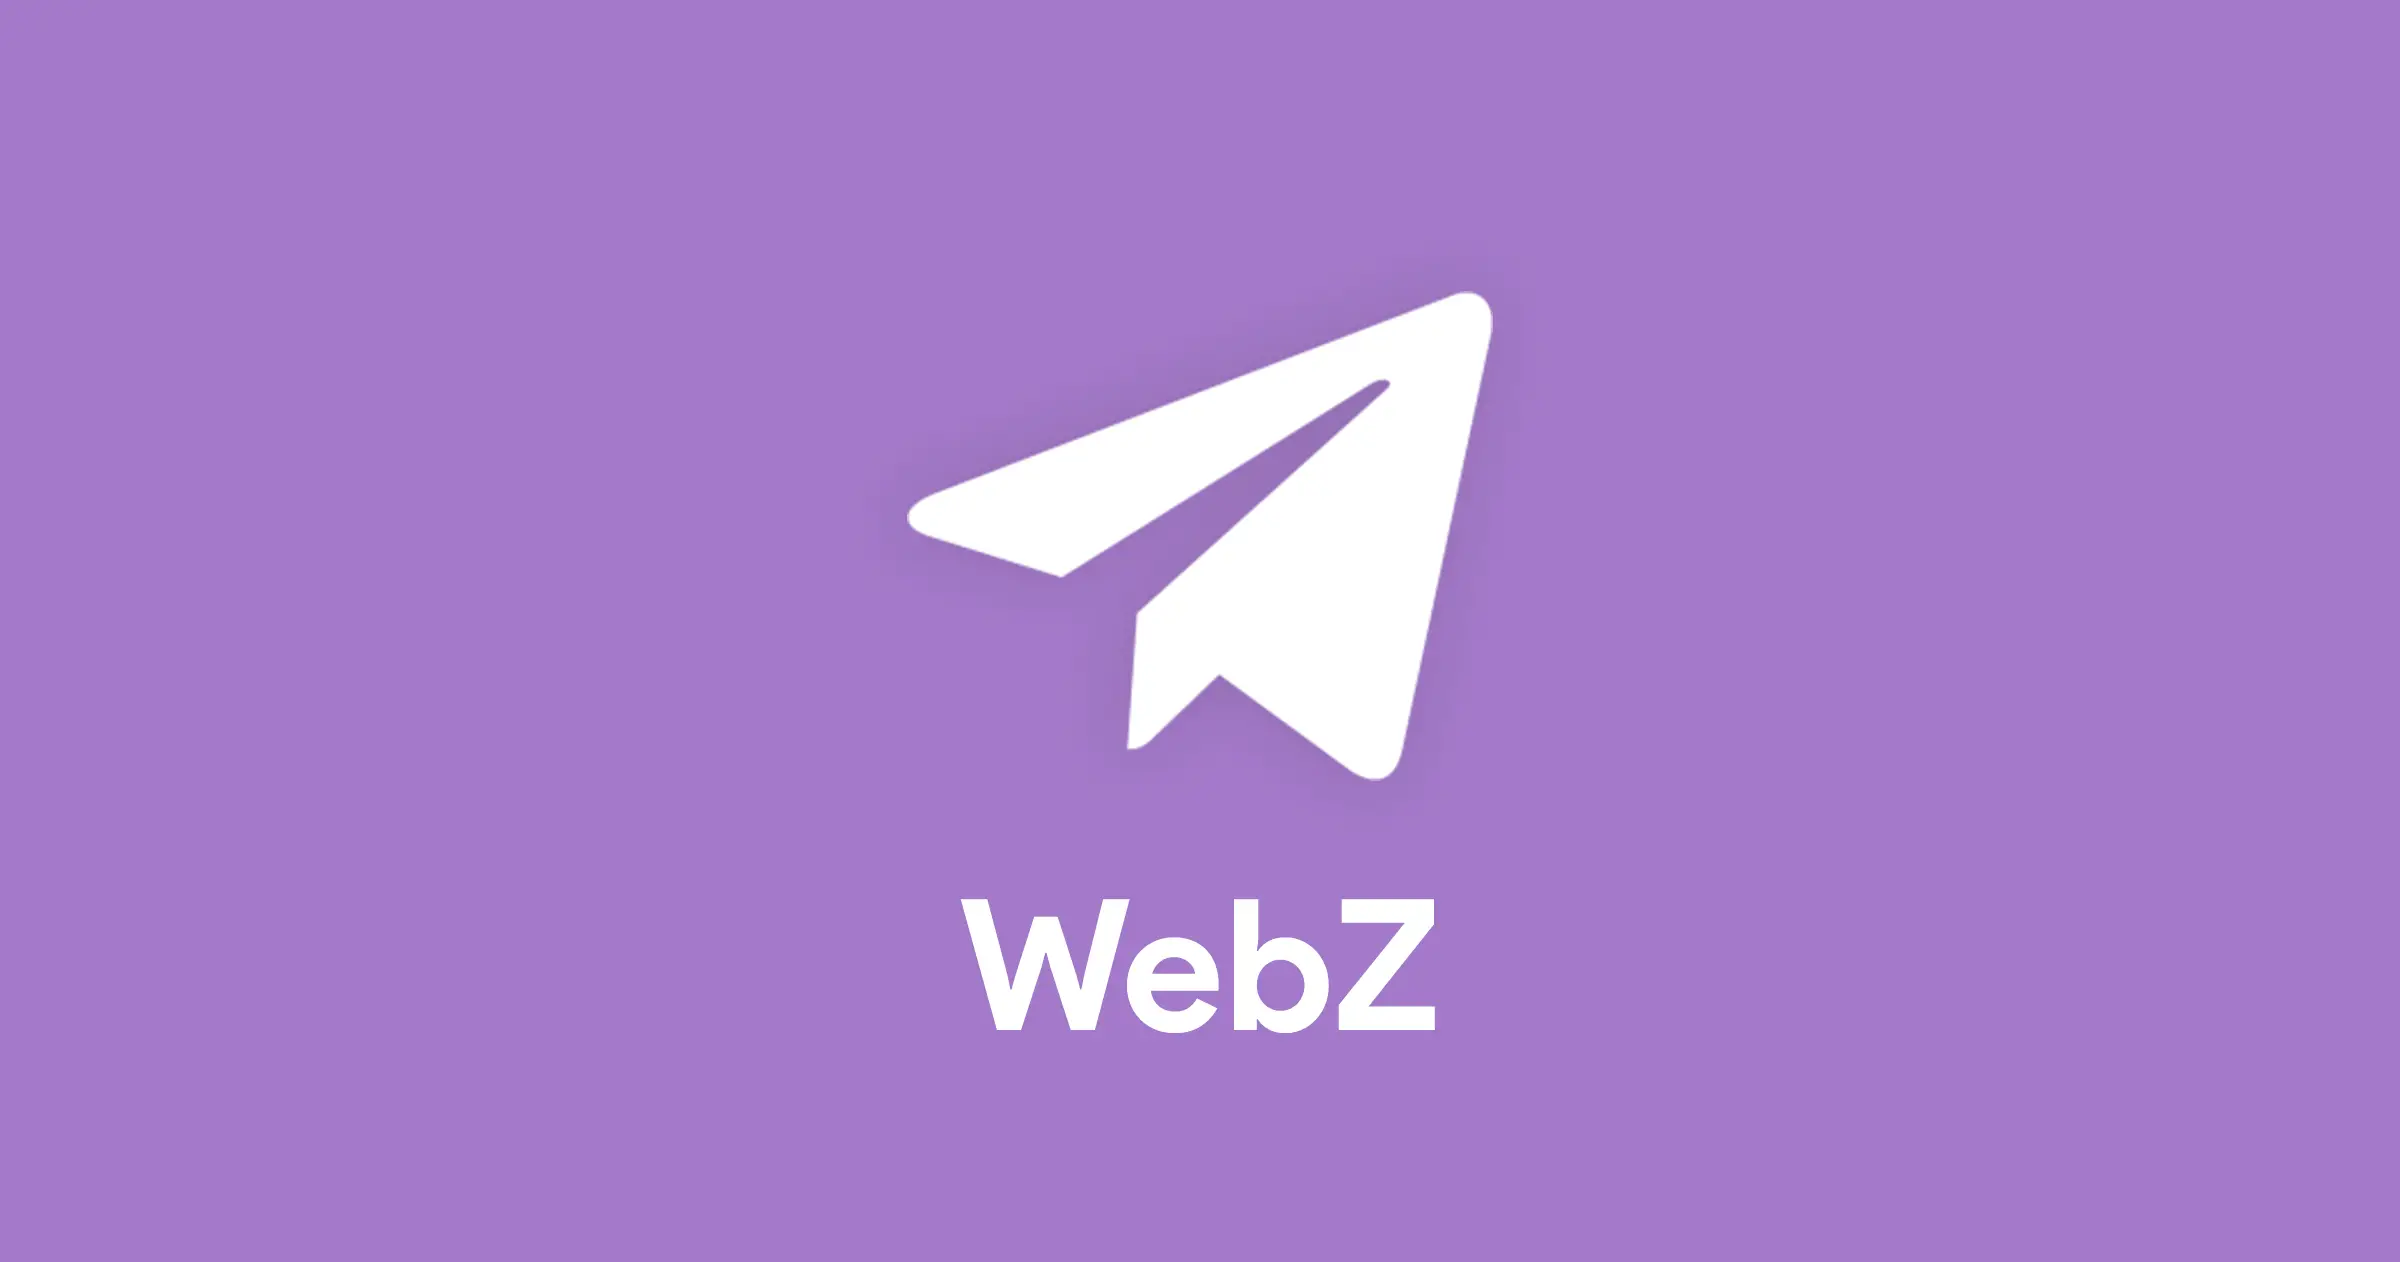 Telegram web 2. Телеграм web. Логотип телеграмм. Телеграм веб значок. Маленький значок телеграм.